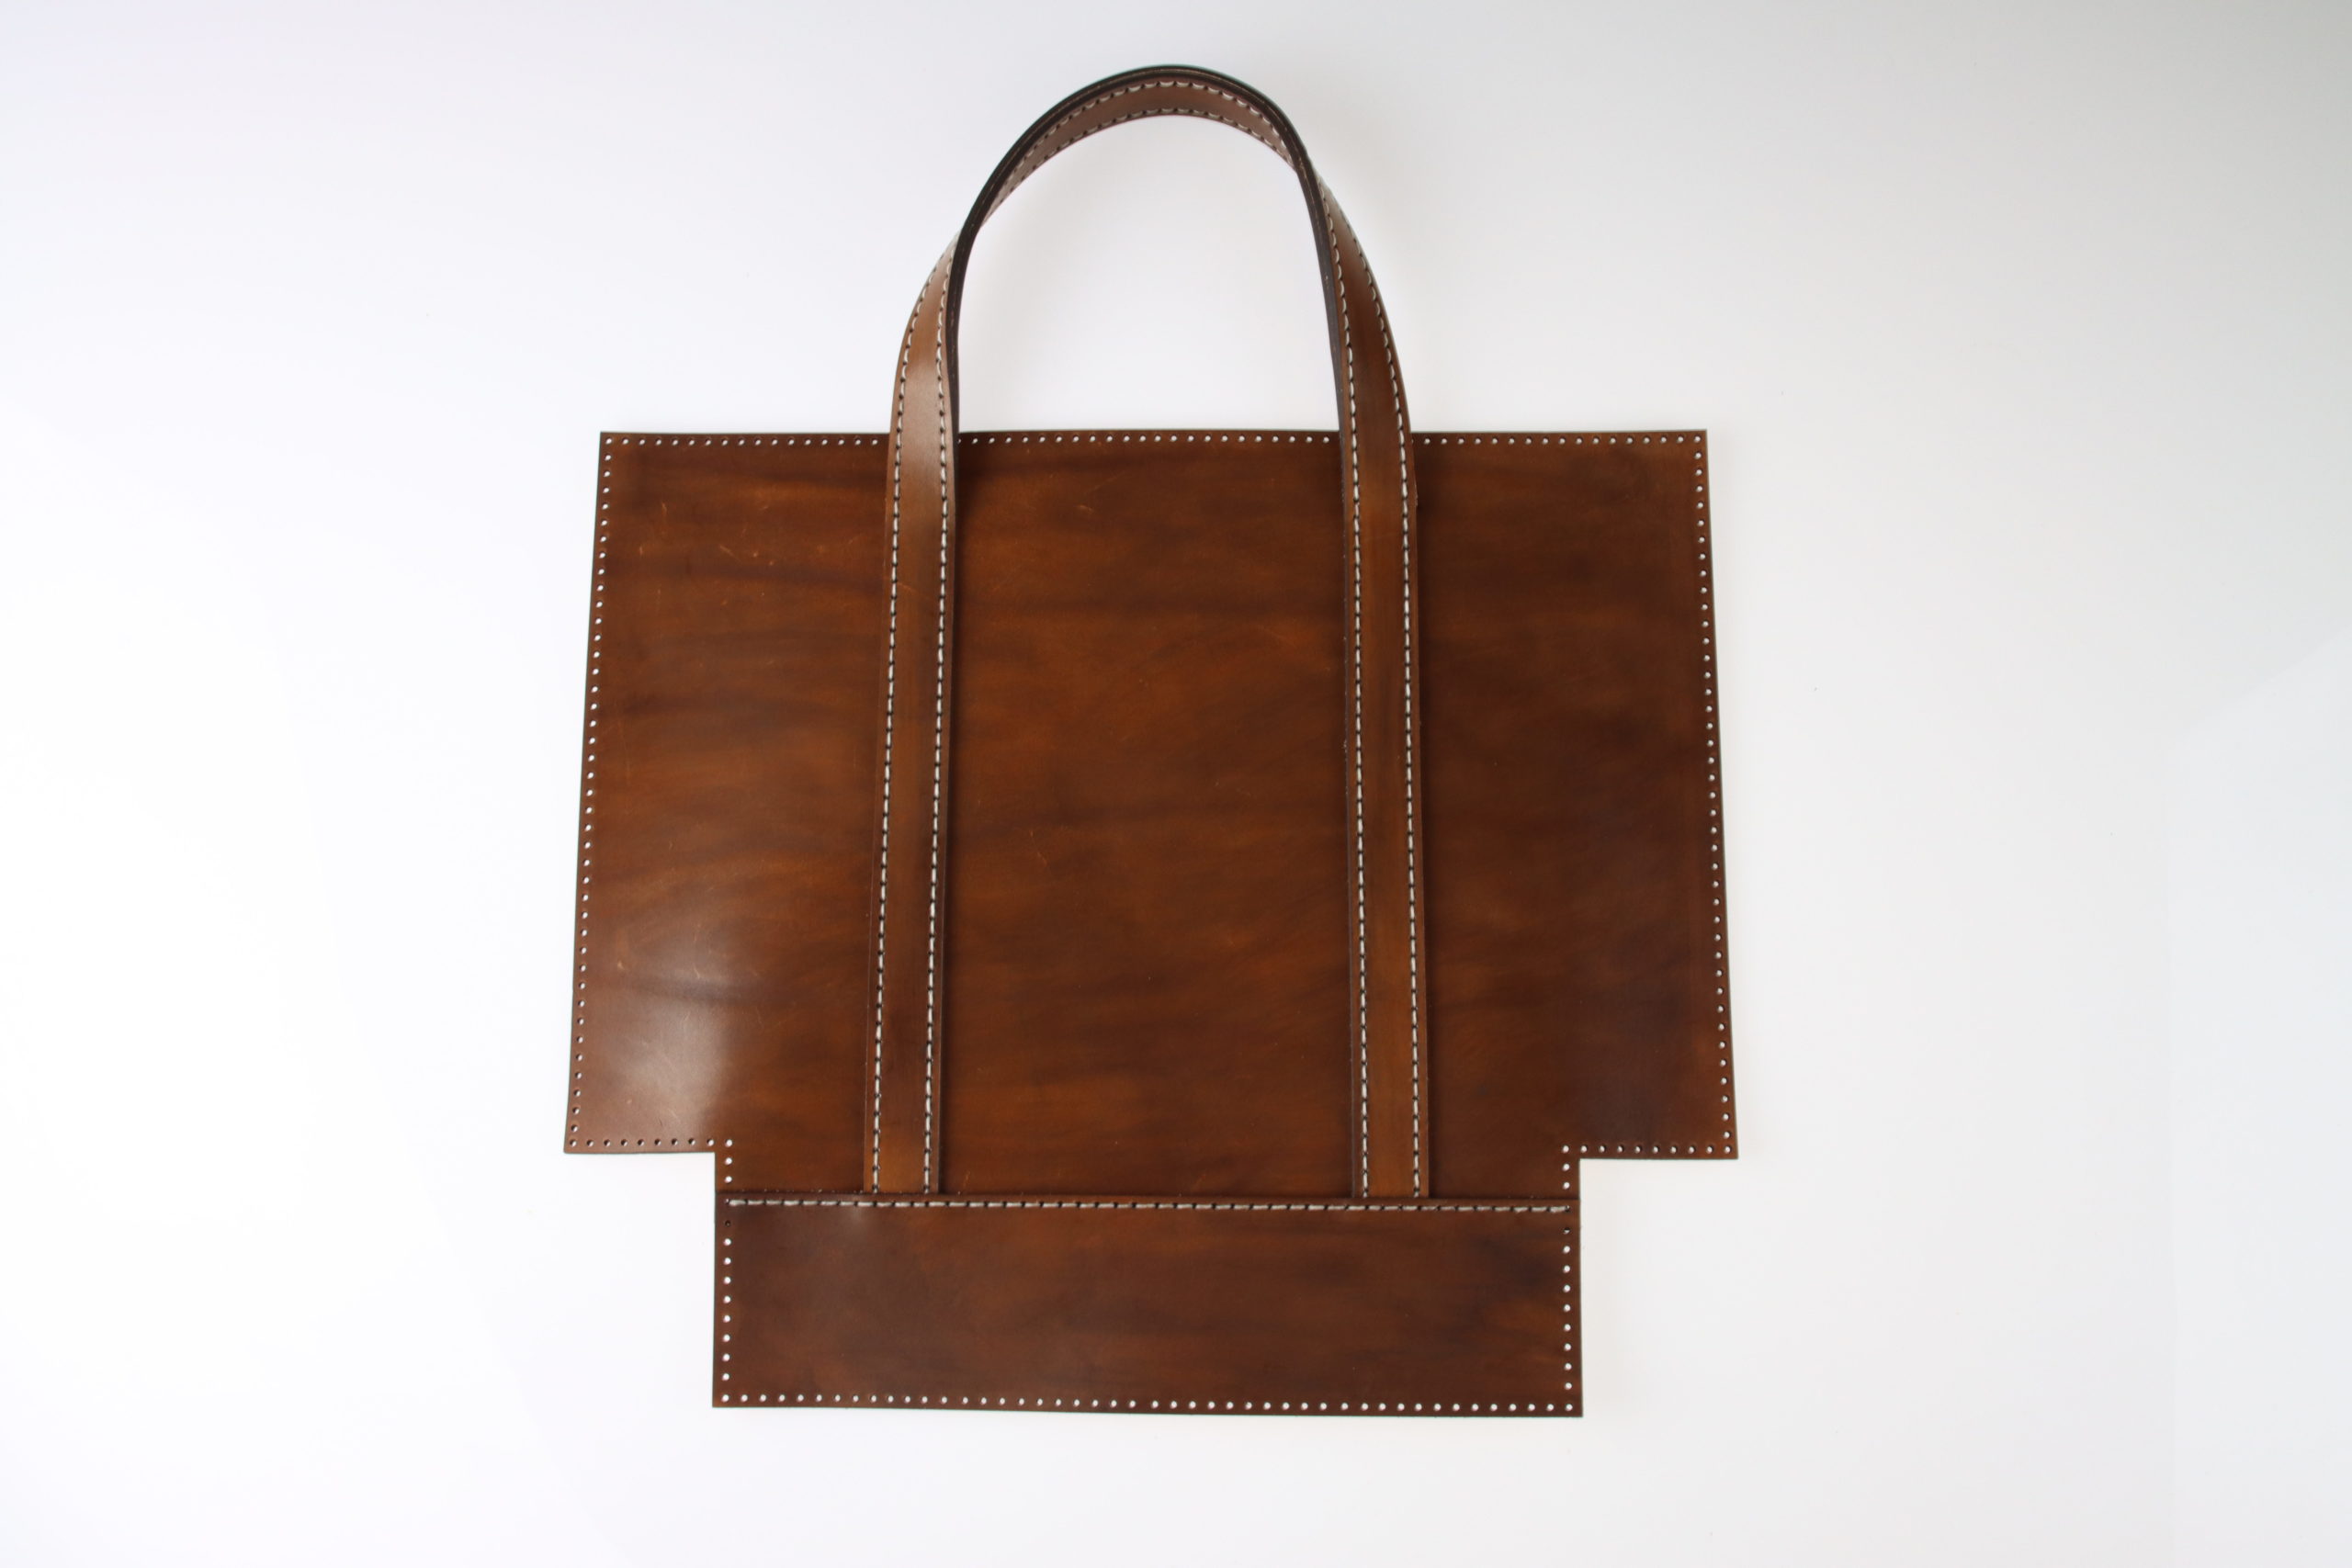 Kit sac à main DIY en cuir : fabriquez votre propre sac à main !